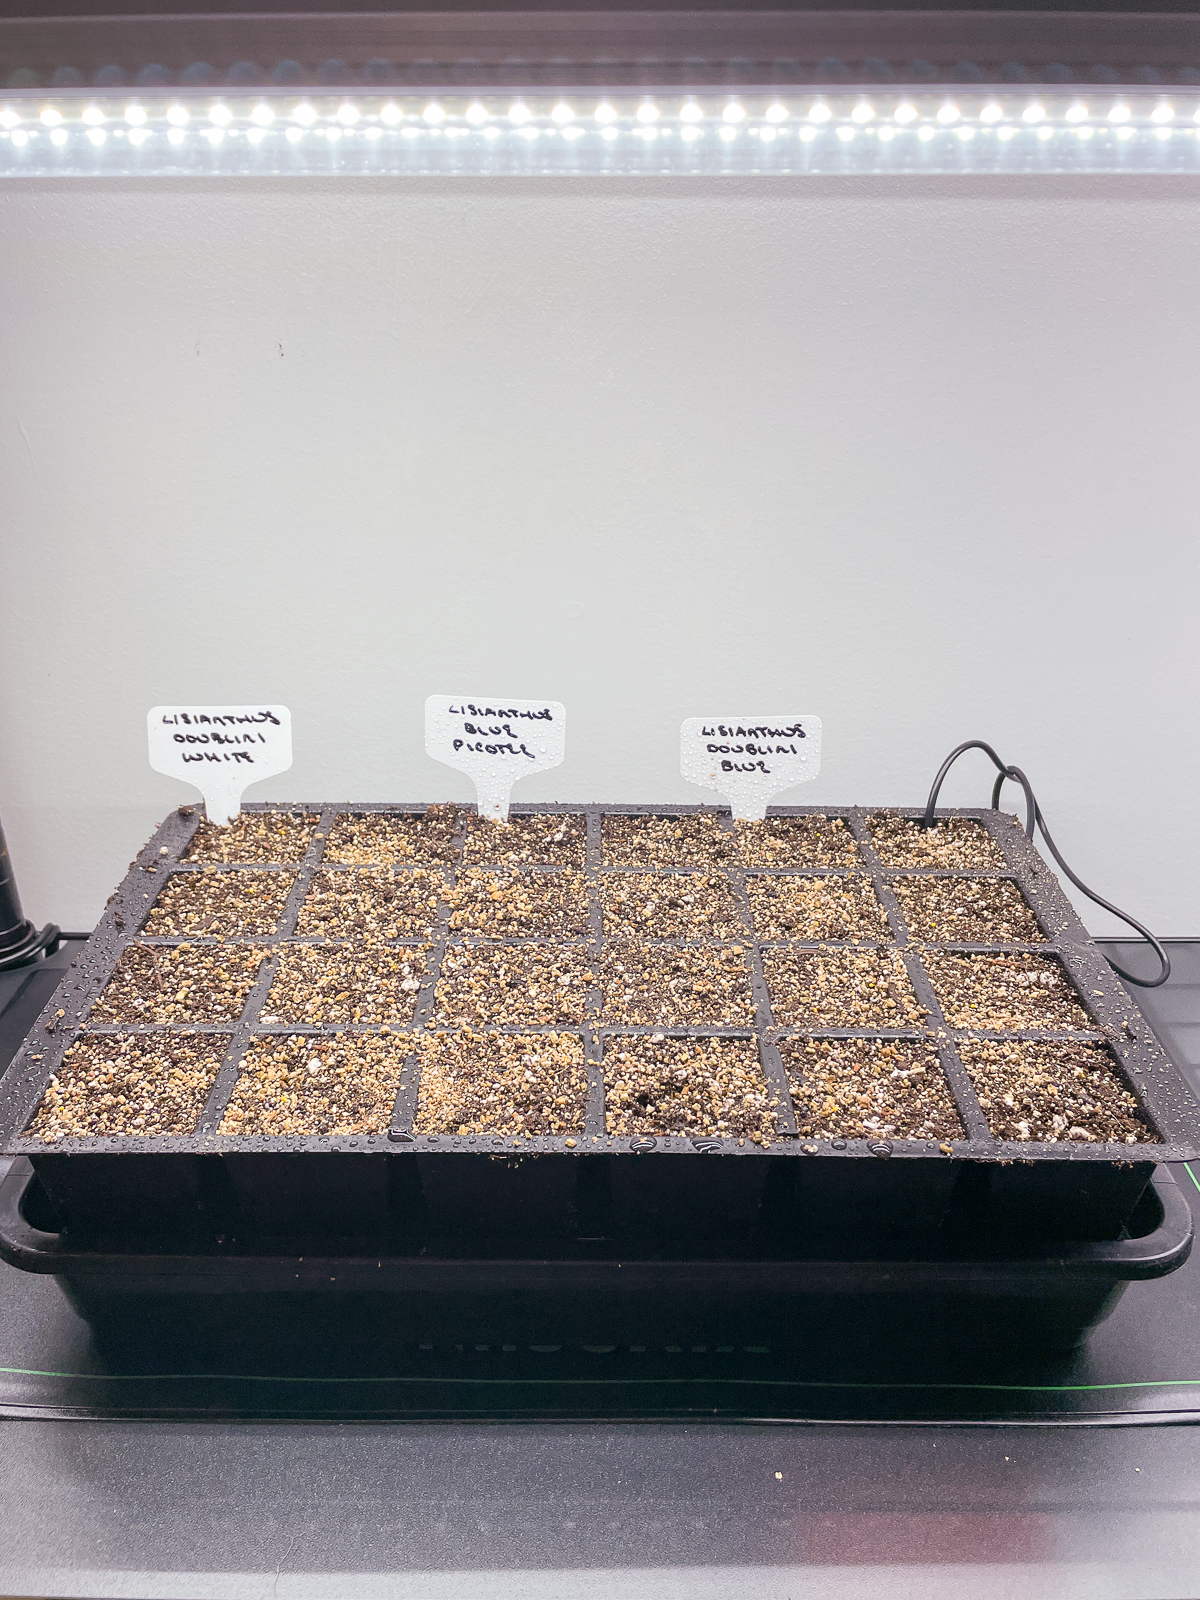 lisianthus seed tray on heat mat under grow lights